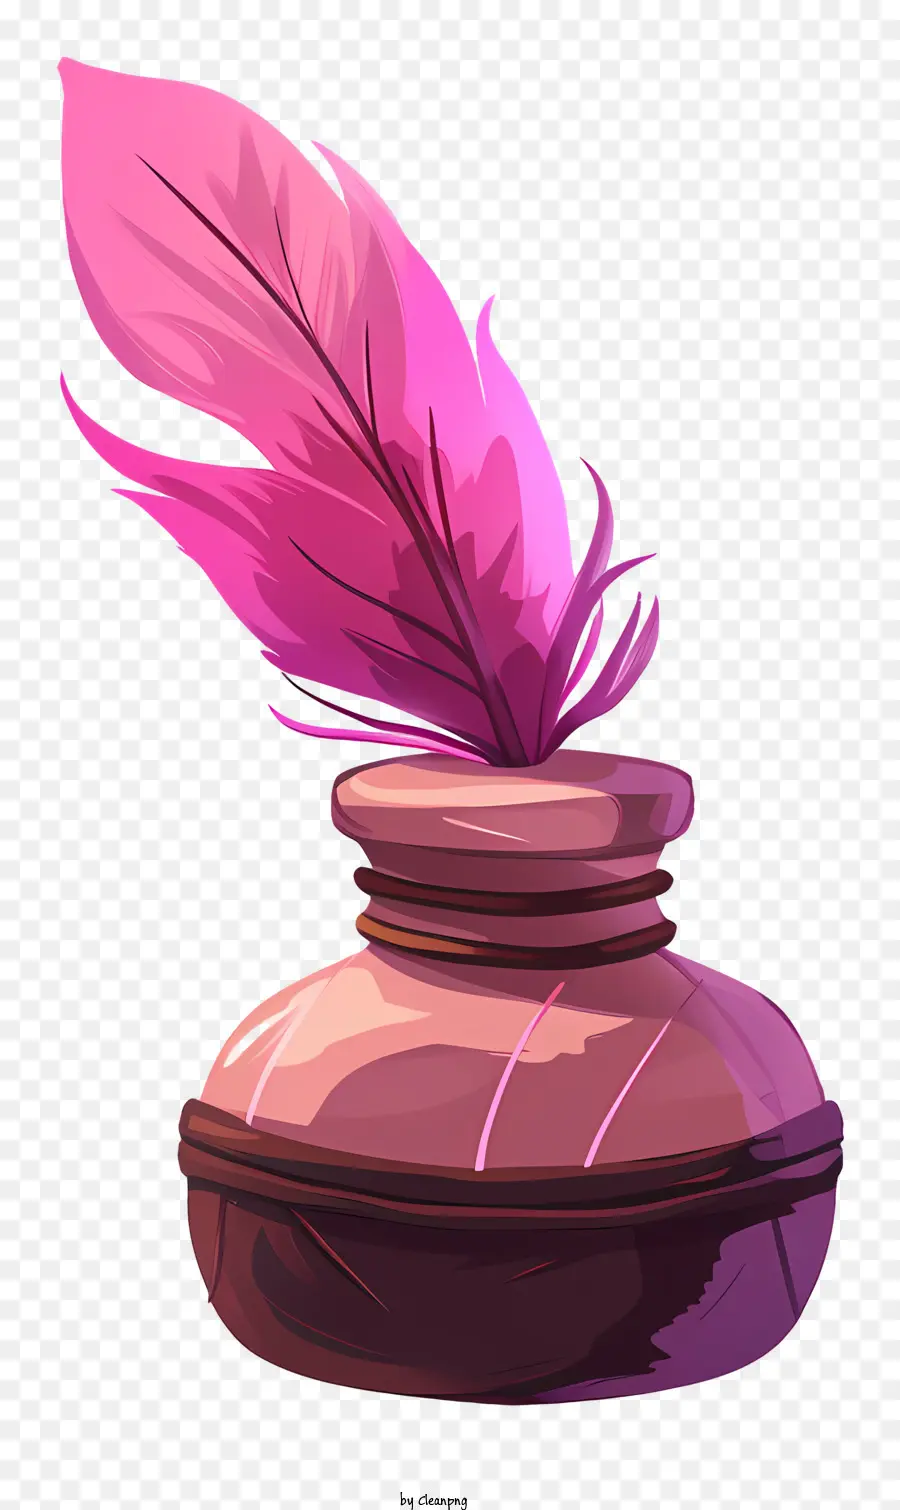 Quill Inkwell Tinte Flasche Pink Feder schwarzer Hintergrund niedrige Auflösung - Image von Tintenflaschen mit geringer Auflösung, Feder; 
Pixel. 
Schwach beleuchtet, möglicherweise verbessert